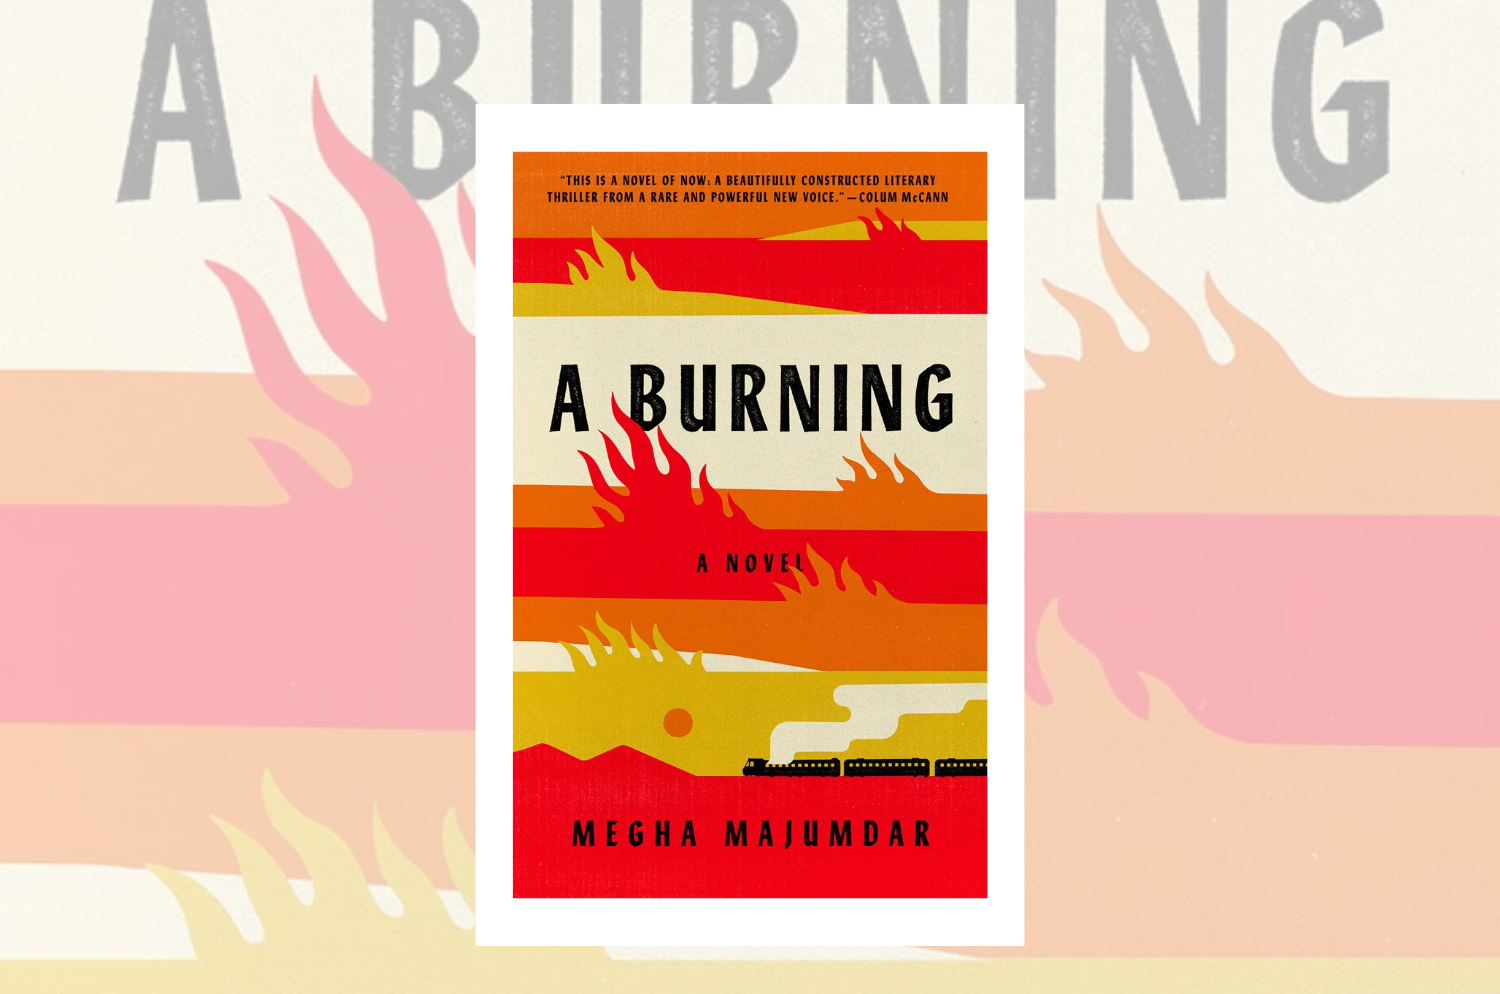 “A Burning” by Megha Majumdar